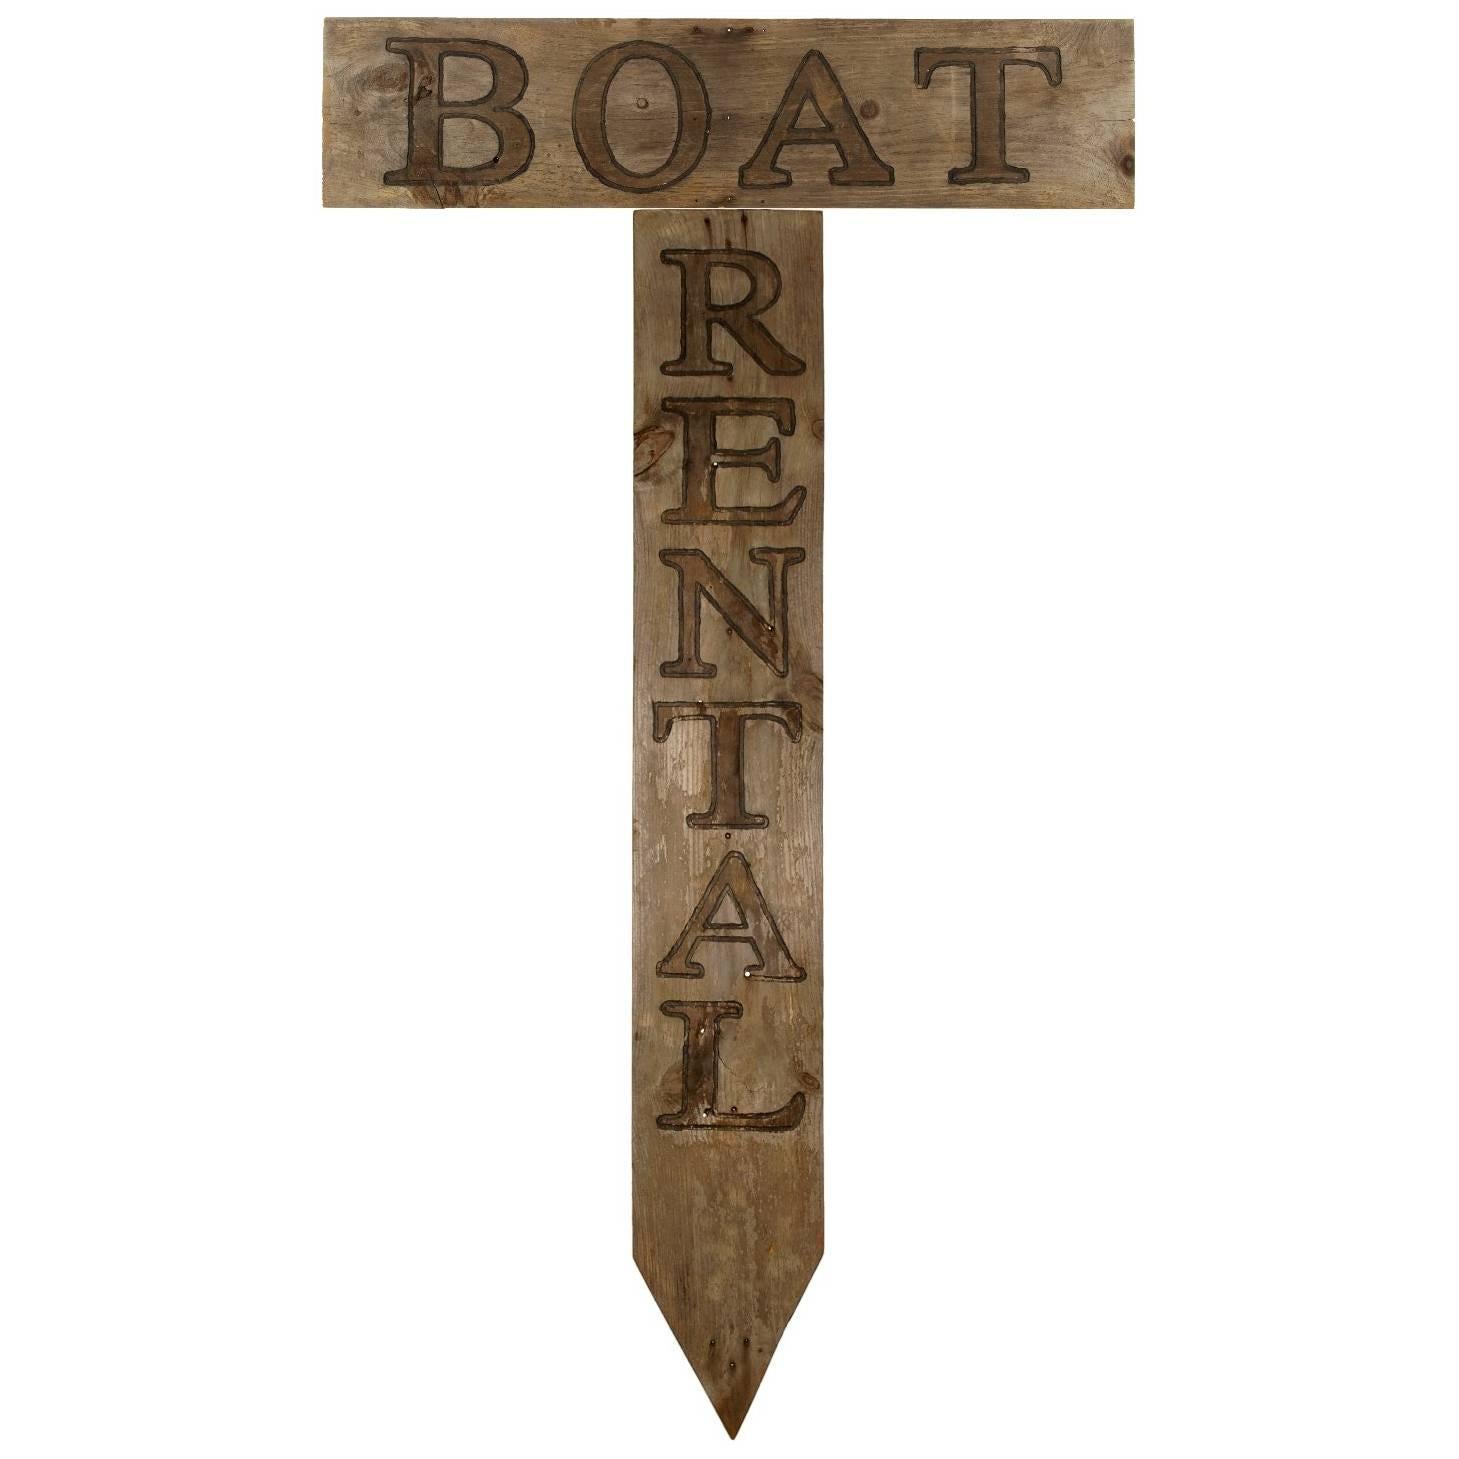 Lake Boat Rental Large Carved Wood Sign For Sale